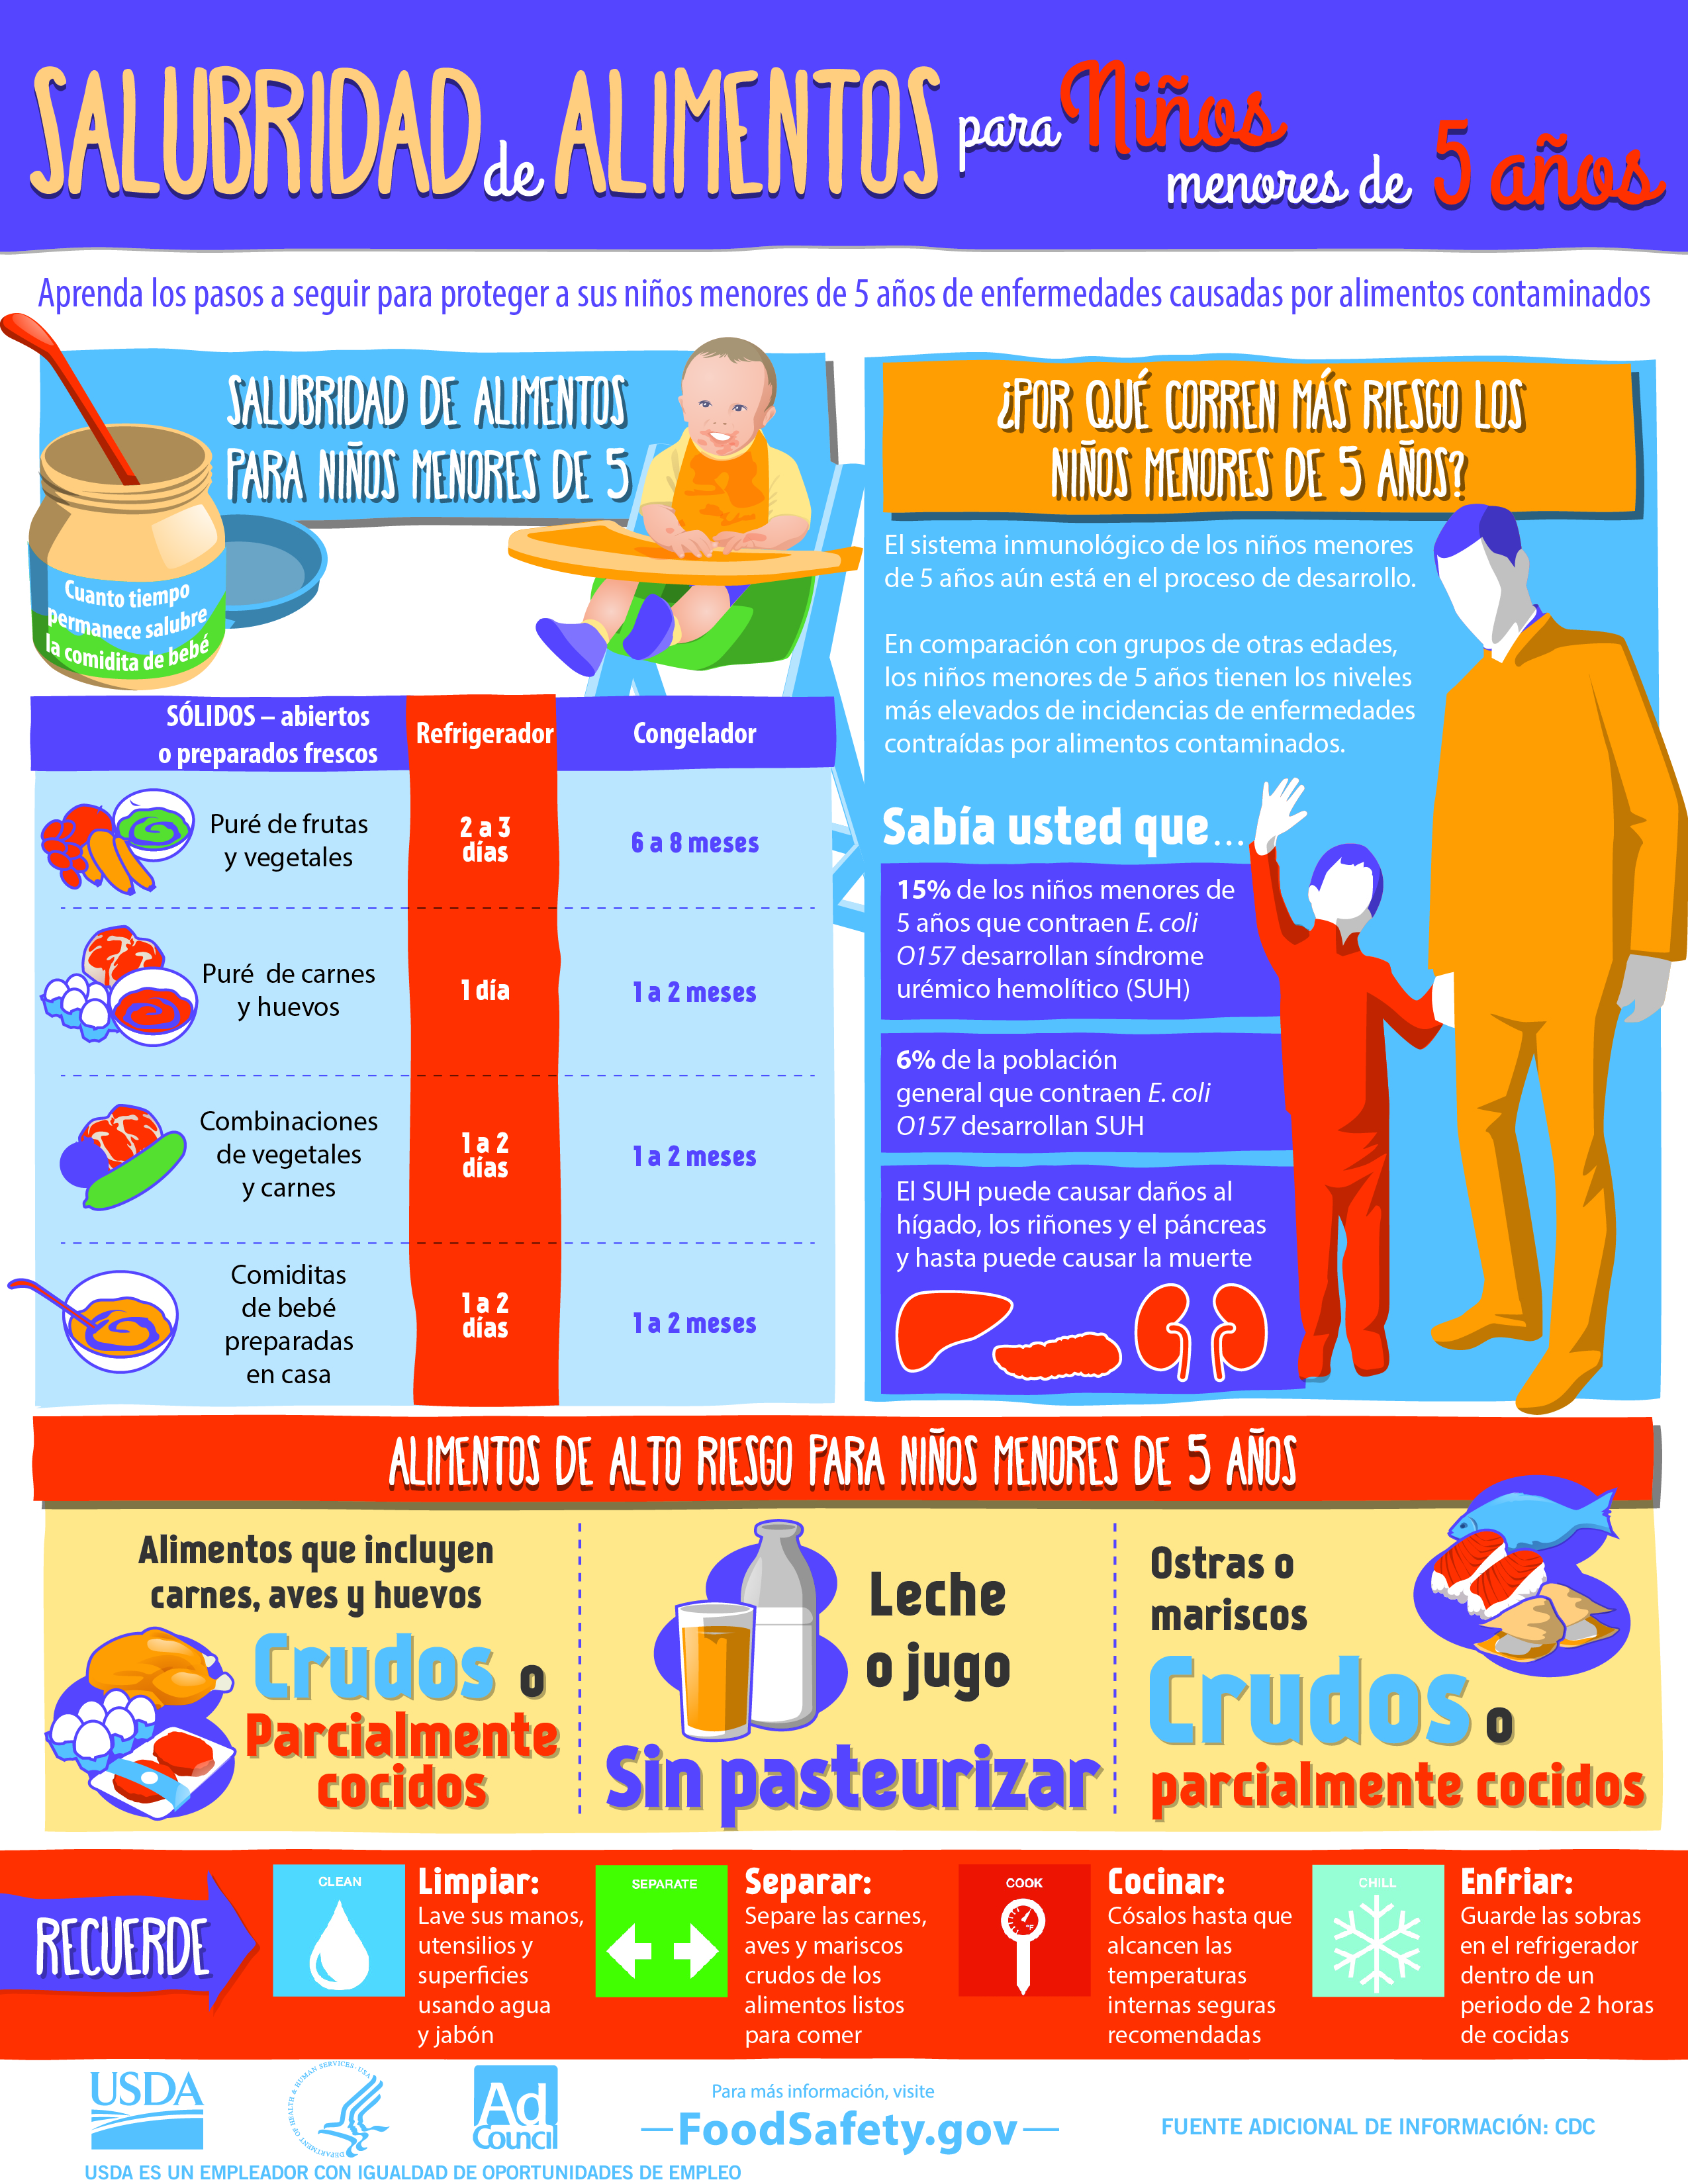 Infografía de FoodSafety.gov con consejos de seguridad alimentaria que ayudarán a proteger a los niños menores de 5 años de una enfermedad transmitida por los alimentos.